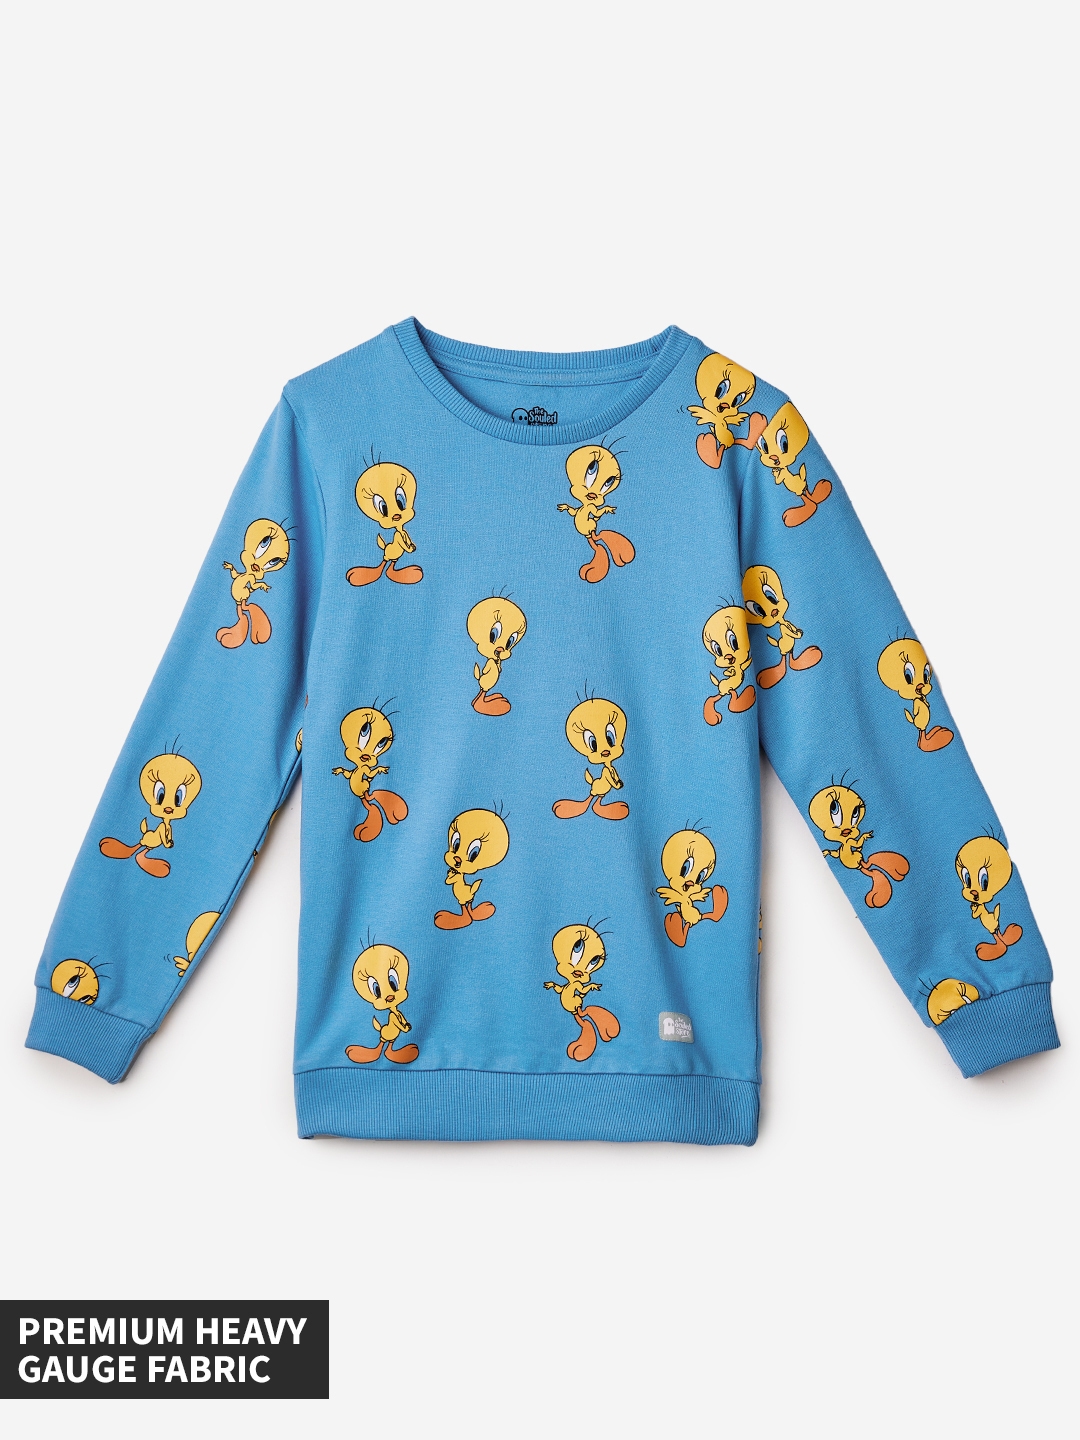 Girls Looney Tunes: Tweety Pattern Girls Cotton Sweatshirts